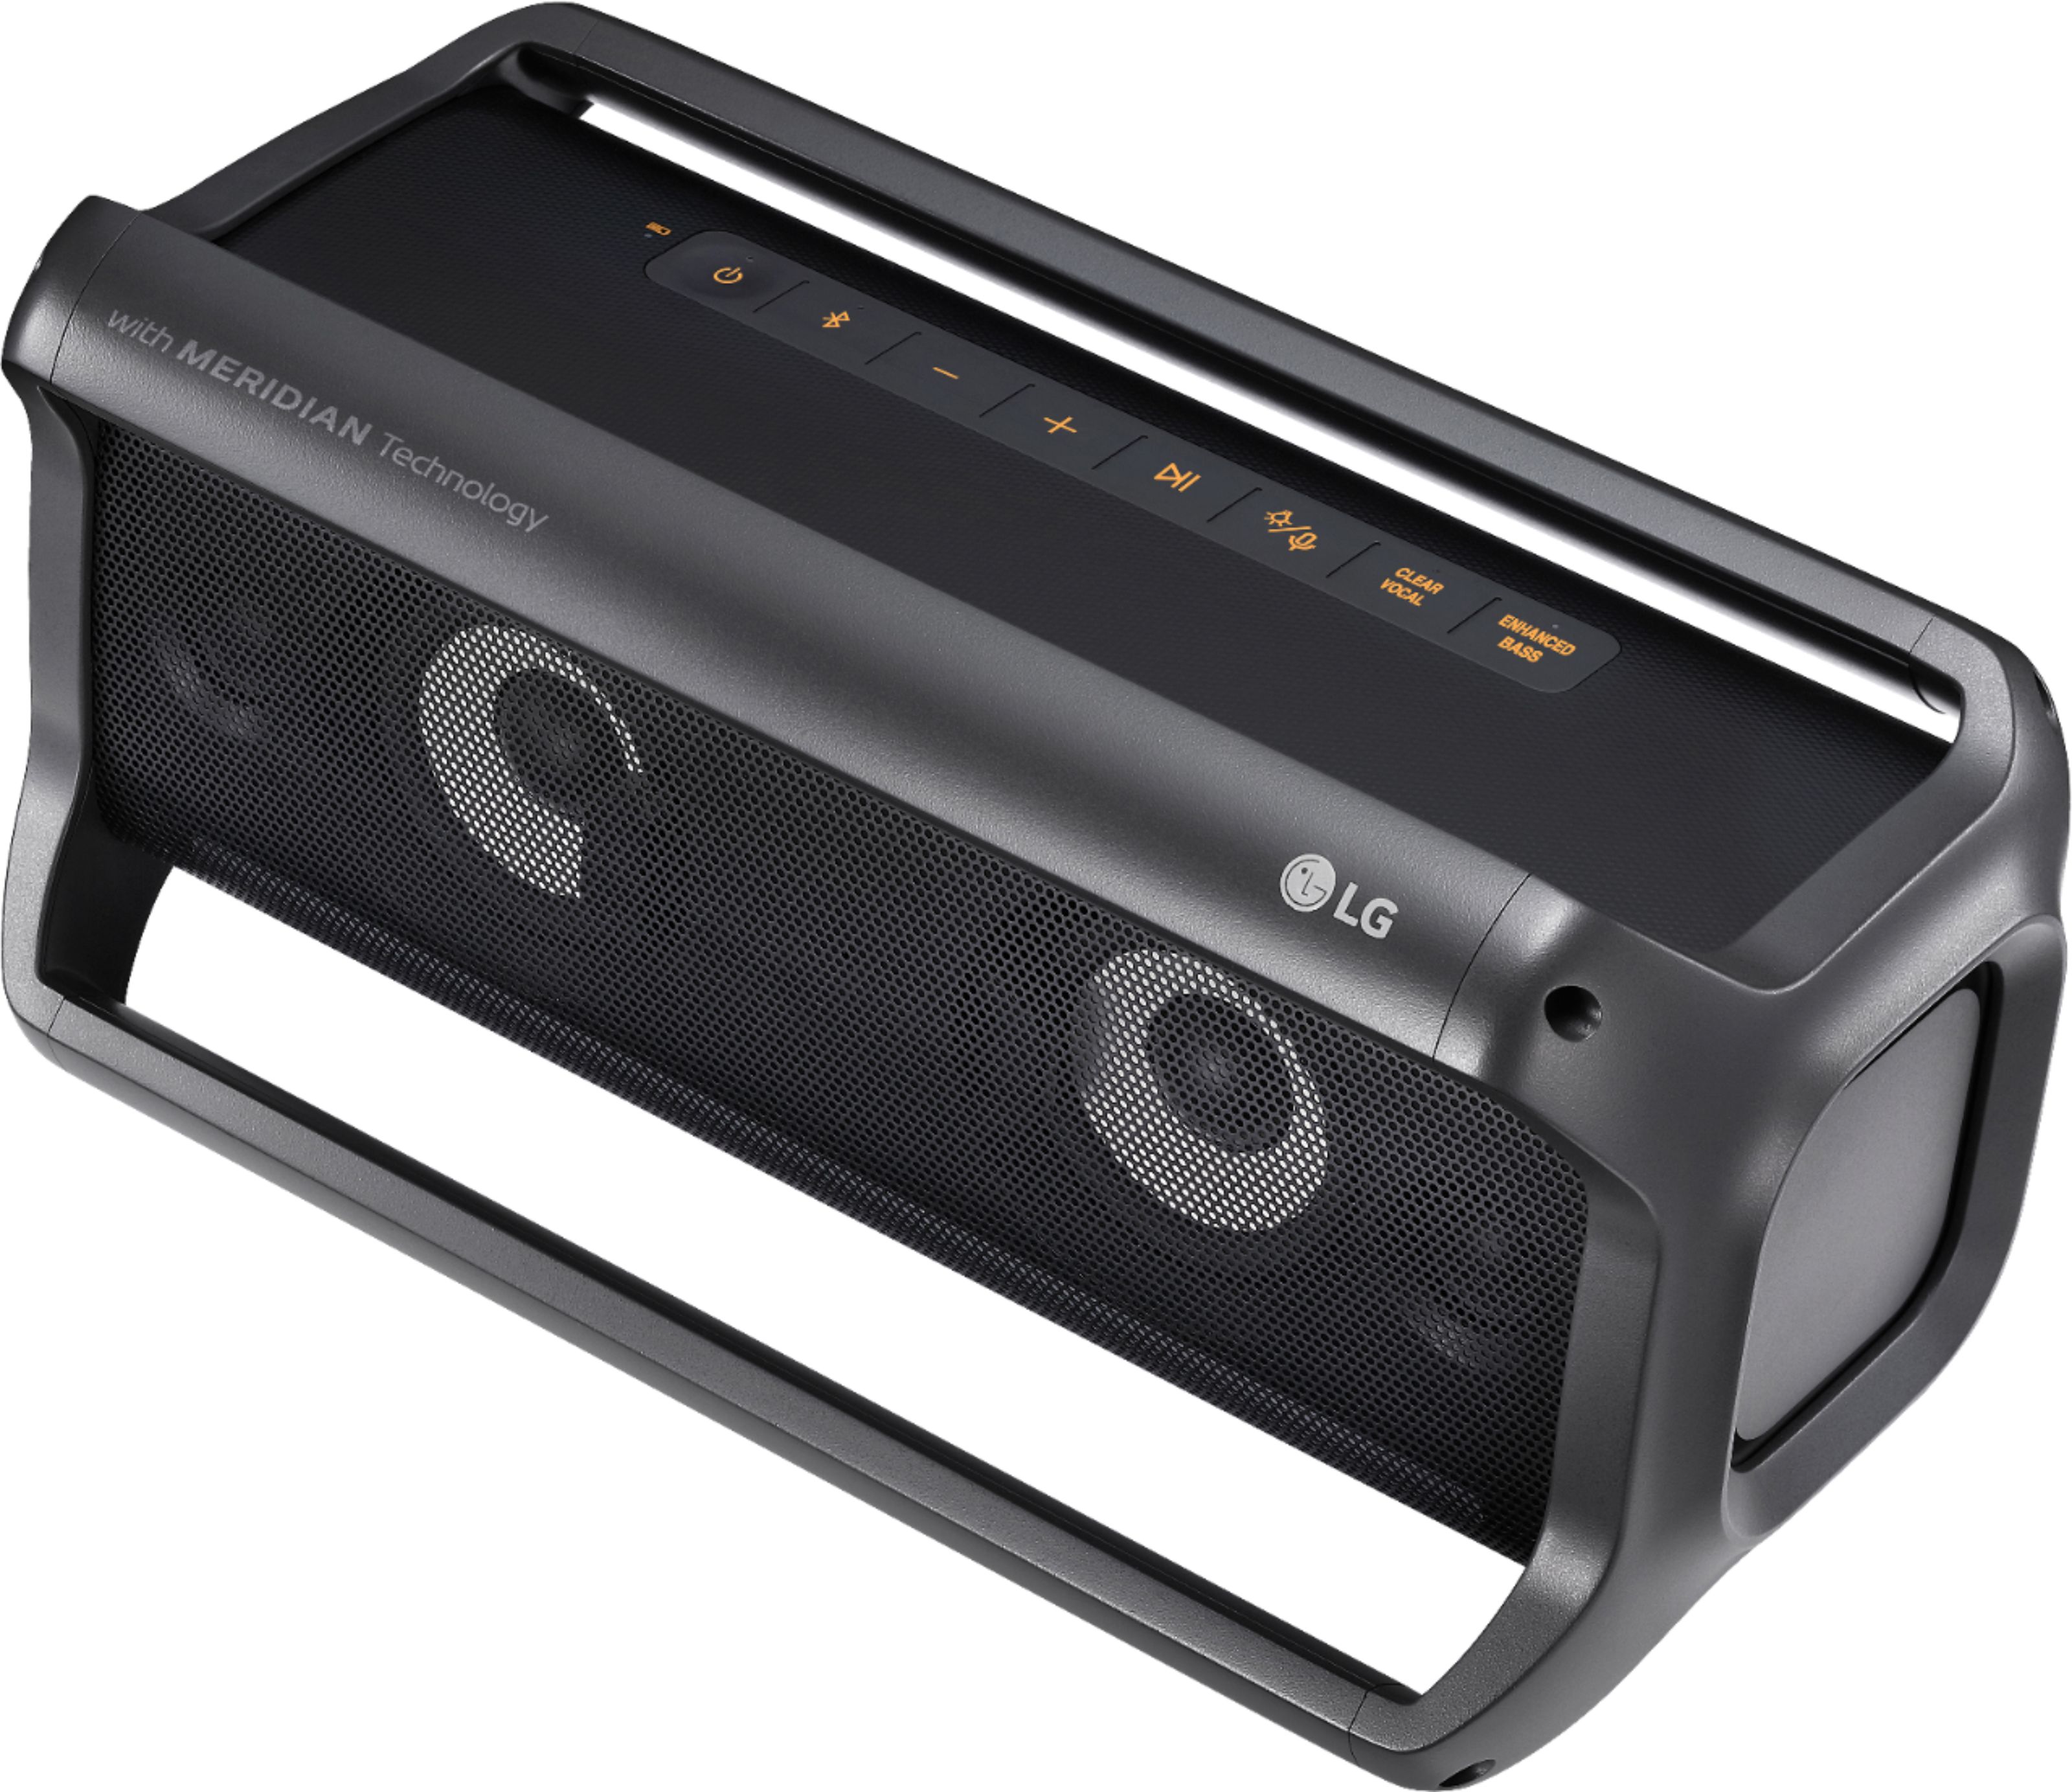 Portable Buy: Black XBOOM PK7 Best Speaker Go PK7 LG Bluetooth